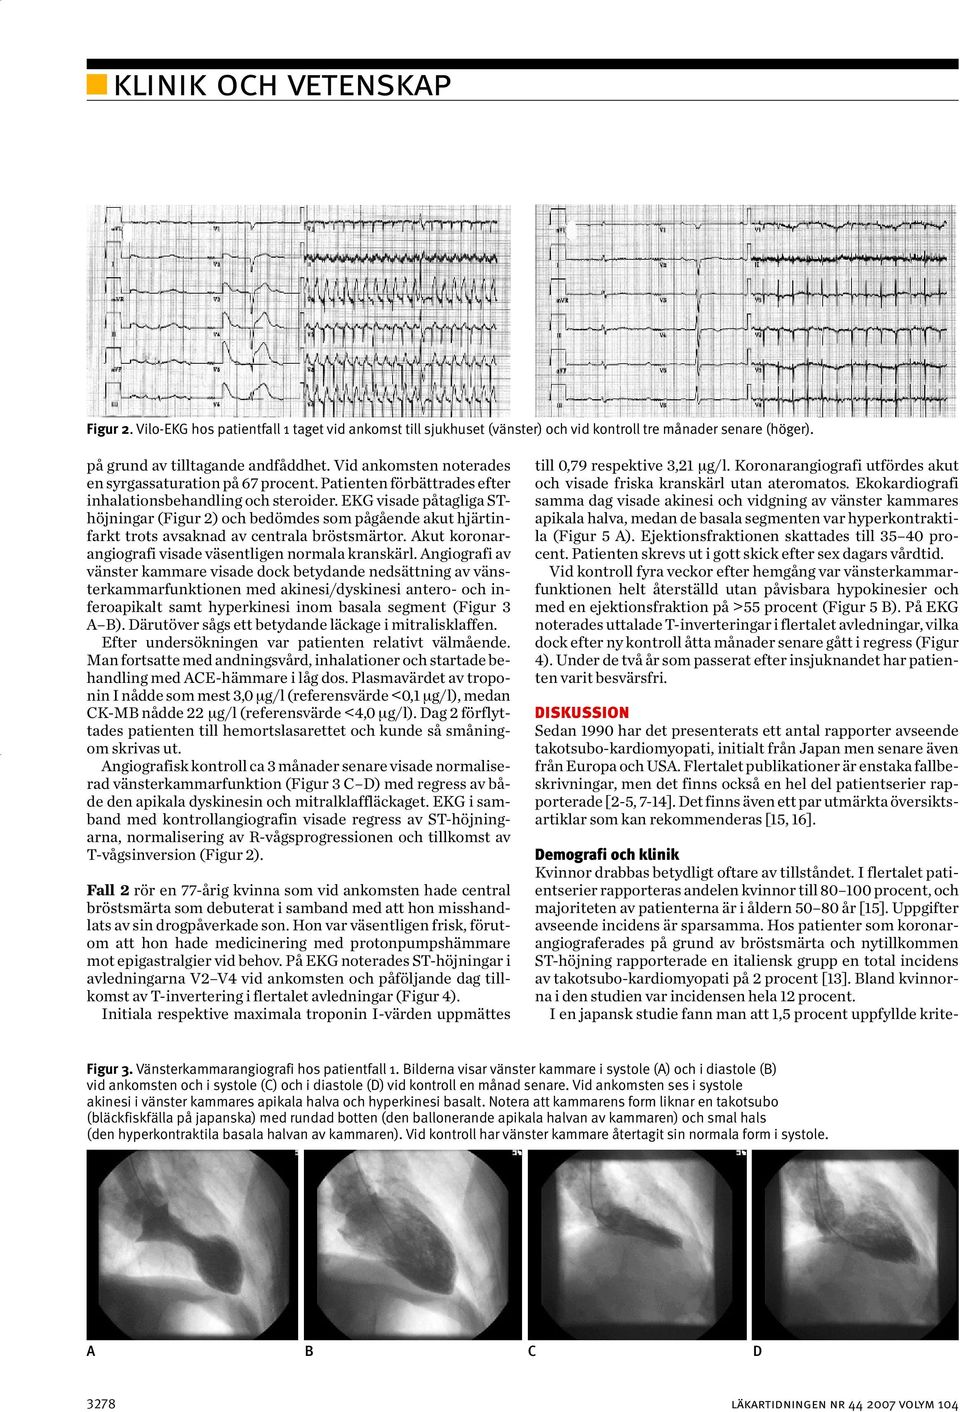 EKG visade påtagliga SThöjningar (Figur 2) och bedömdes som pågående akut hjärtinfarkt trots avsaknad av centrala bröstsmärtor. Akut koronarangiografi visade väsentligen normala kranskärl.